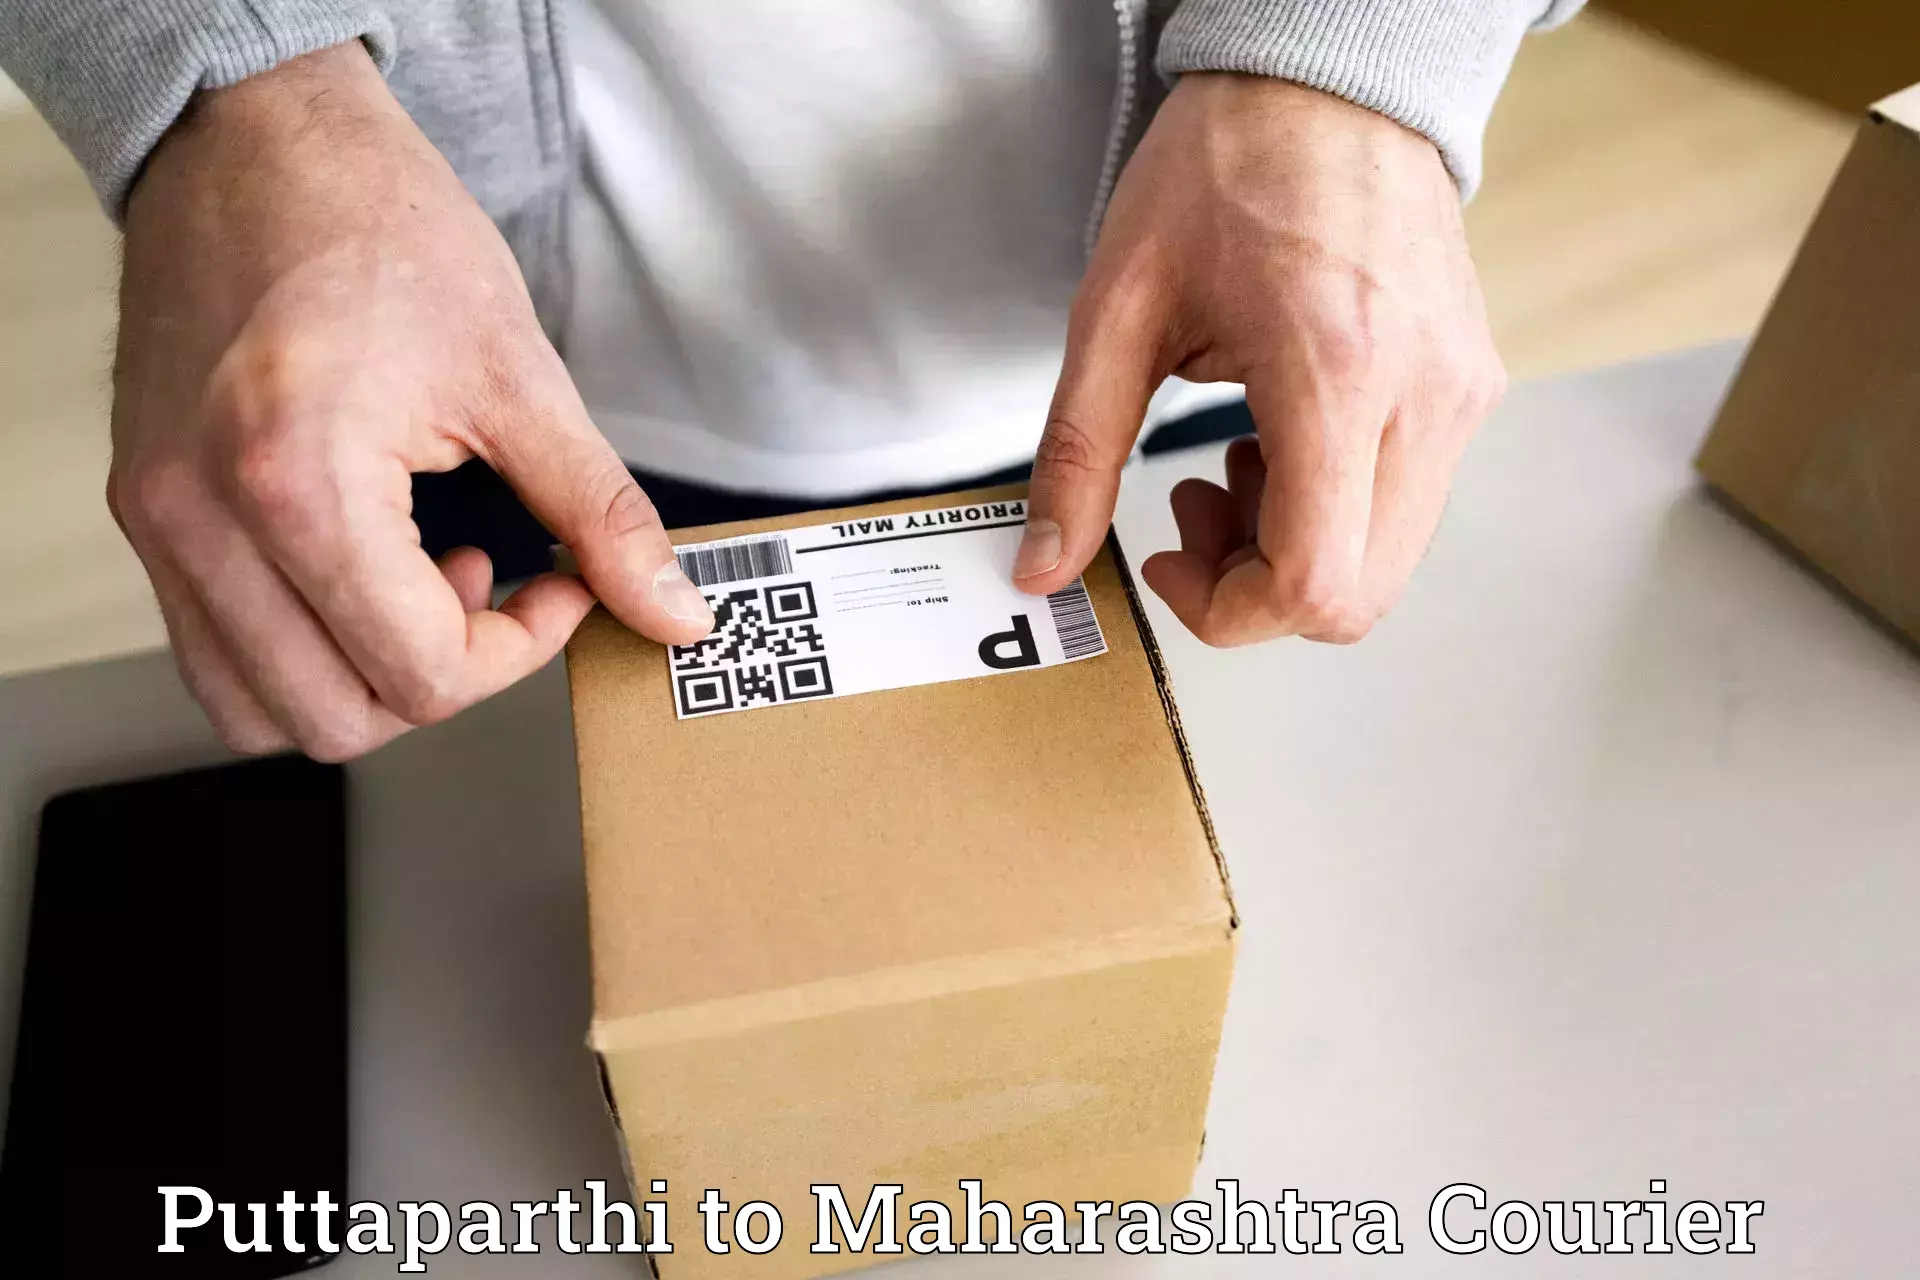 Expedited shipping methods Puttaparthi to Maharashtra